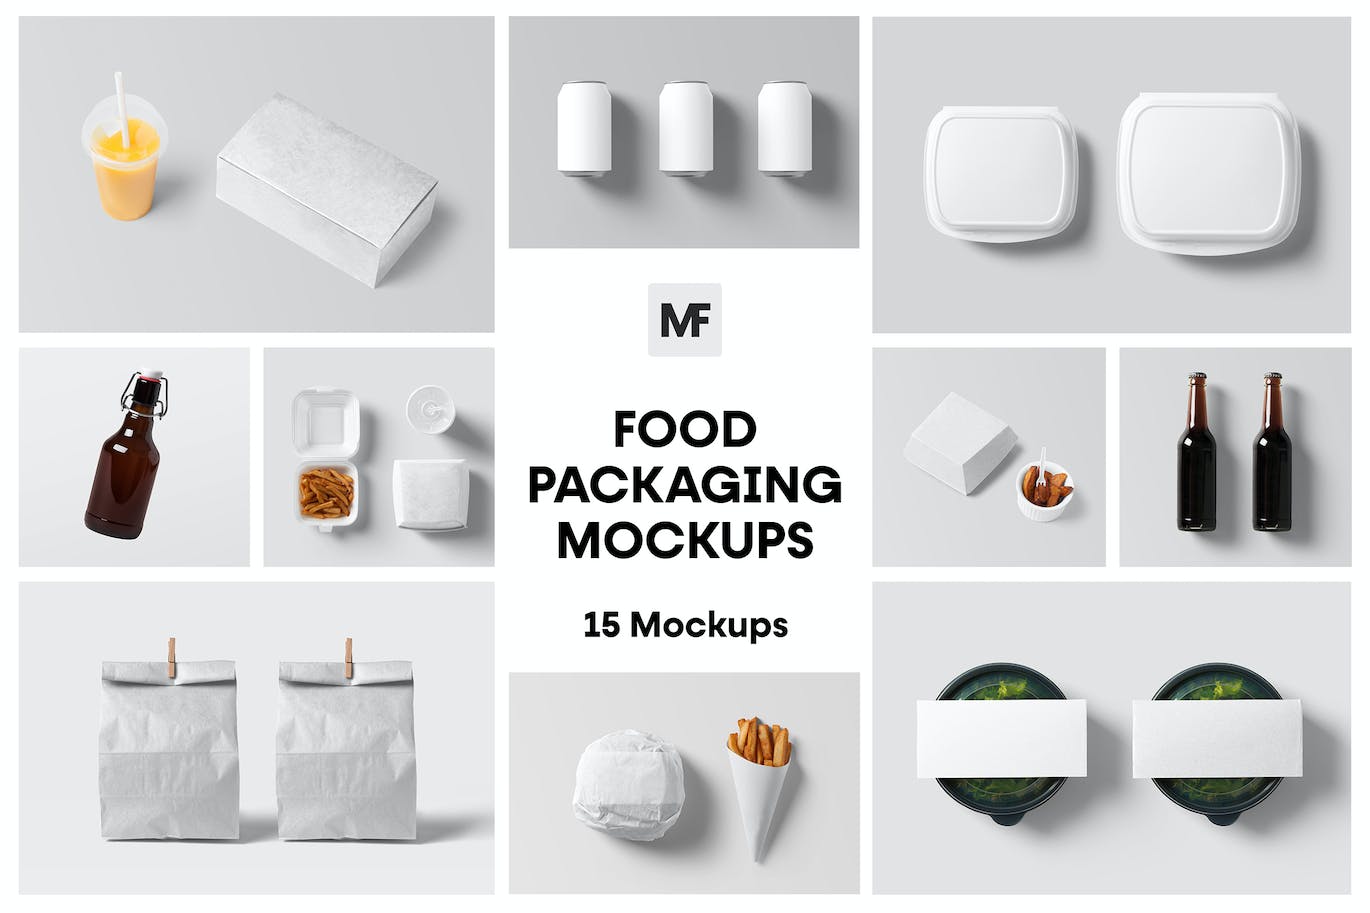 食品包装设计展示样机套件 Food Packaging Mockups 样机素材 第1张